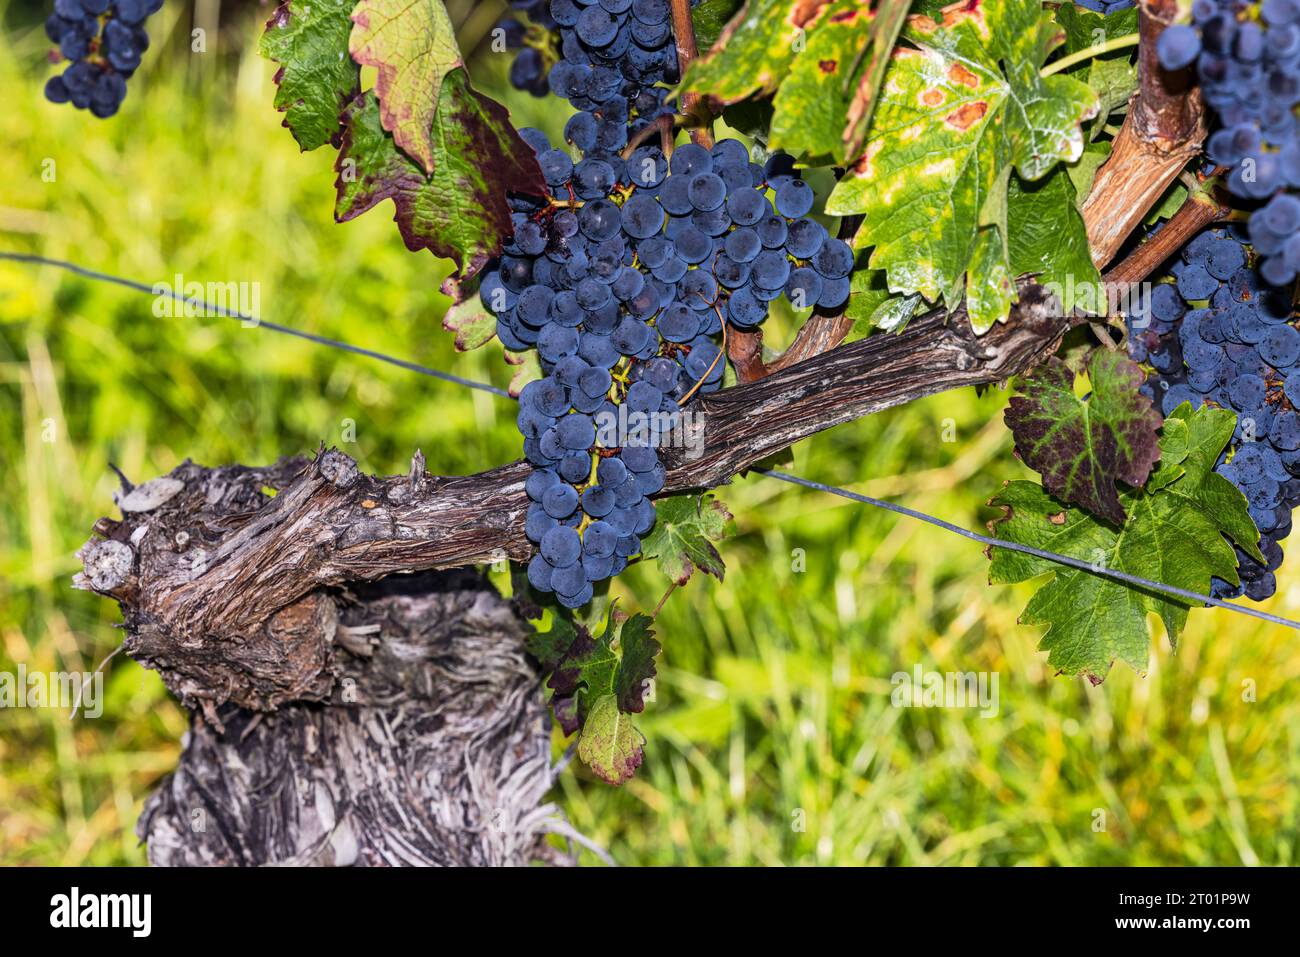 Alte Weinrebe mit reifer Traube aus blauen Trauben, die malerisch aus der Nähe geschnitten wurden Stockfoto